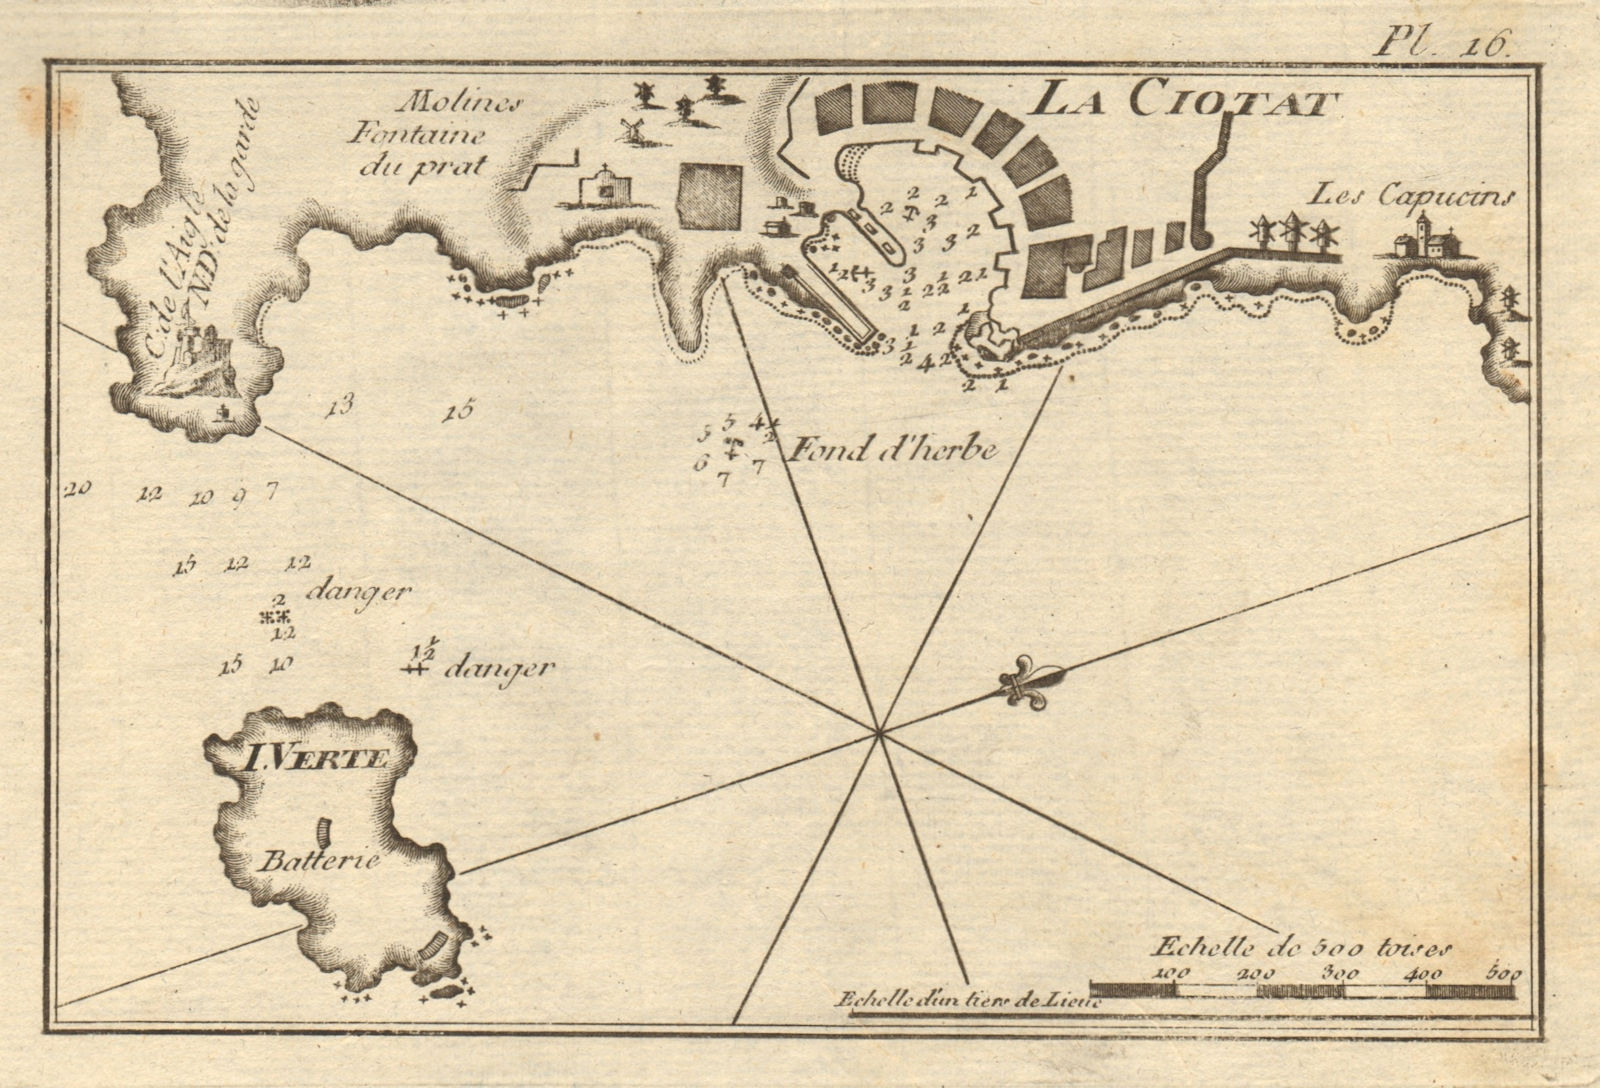 Associate Product Port of La Ciotat & Ile Verte. Bouches-du-Rhône. ROUX 1804 old antique map